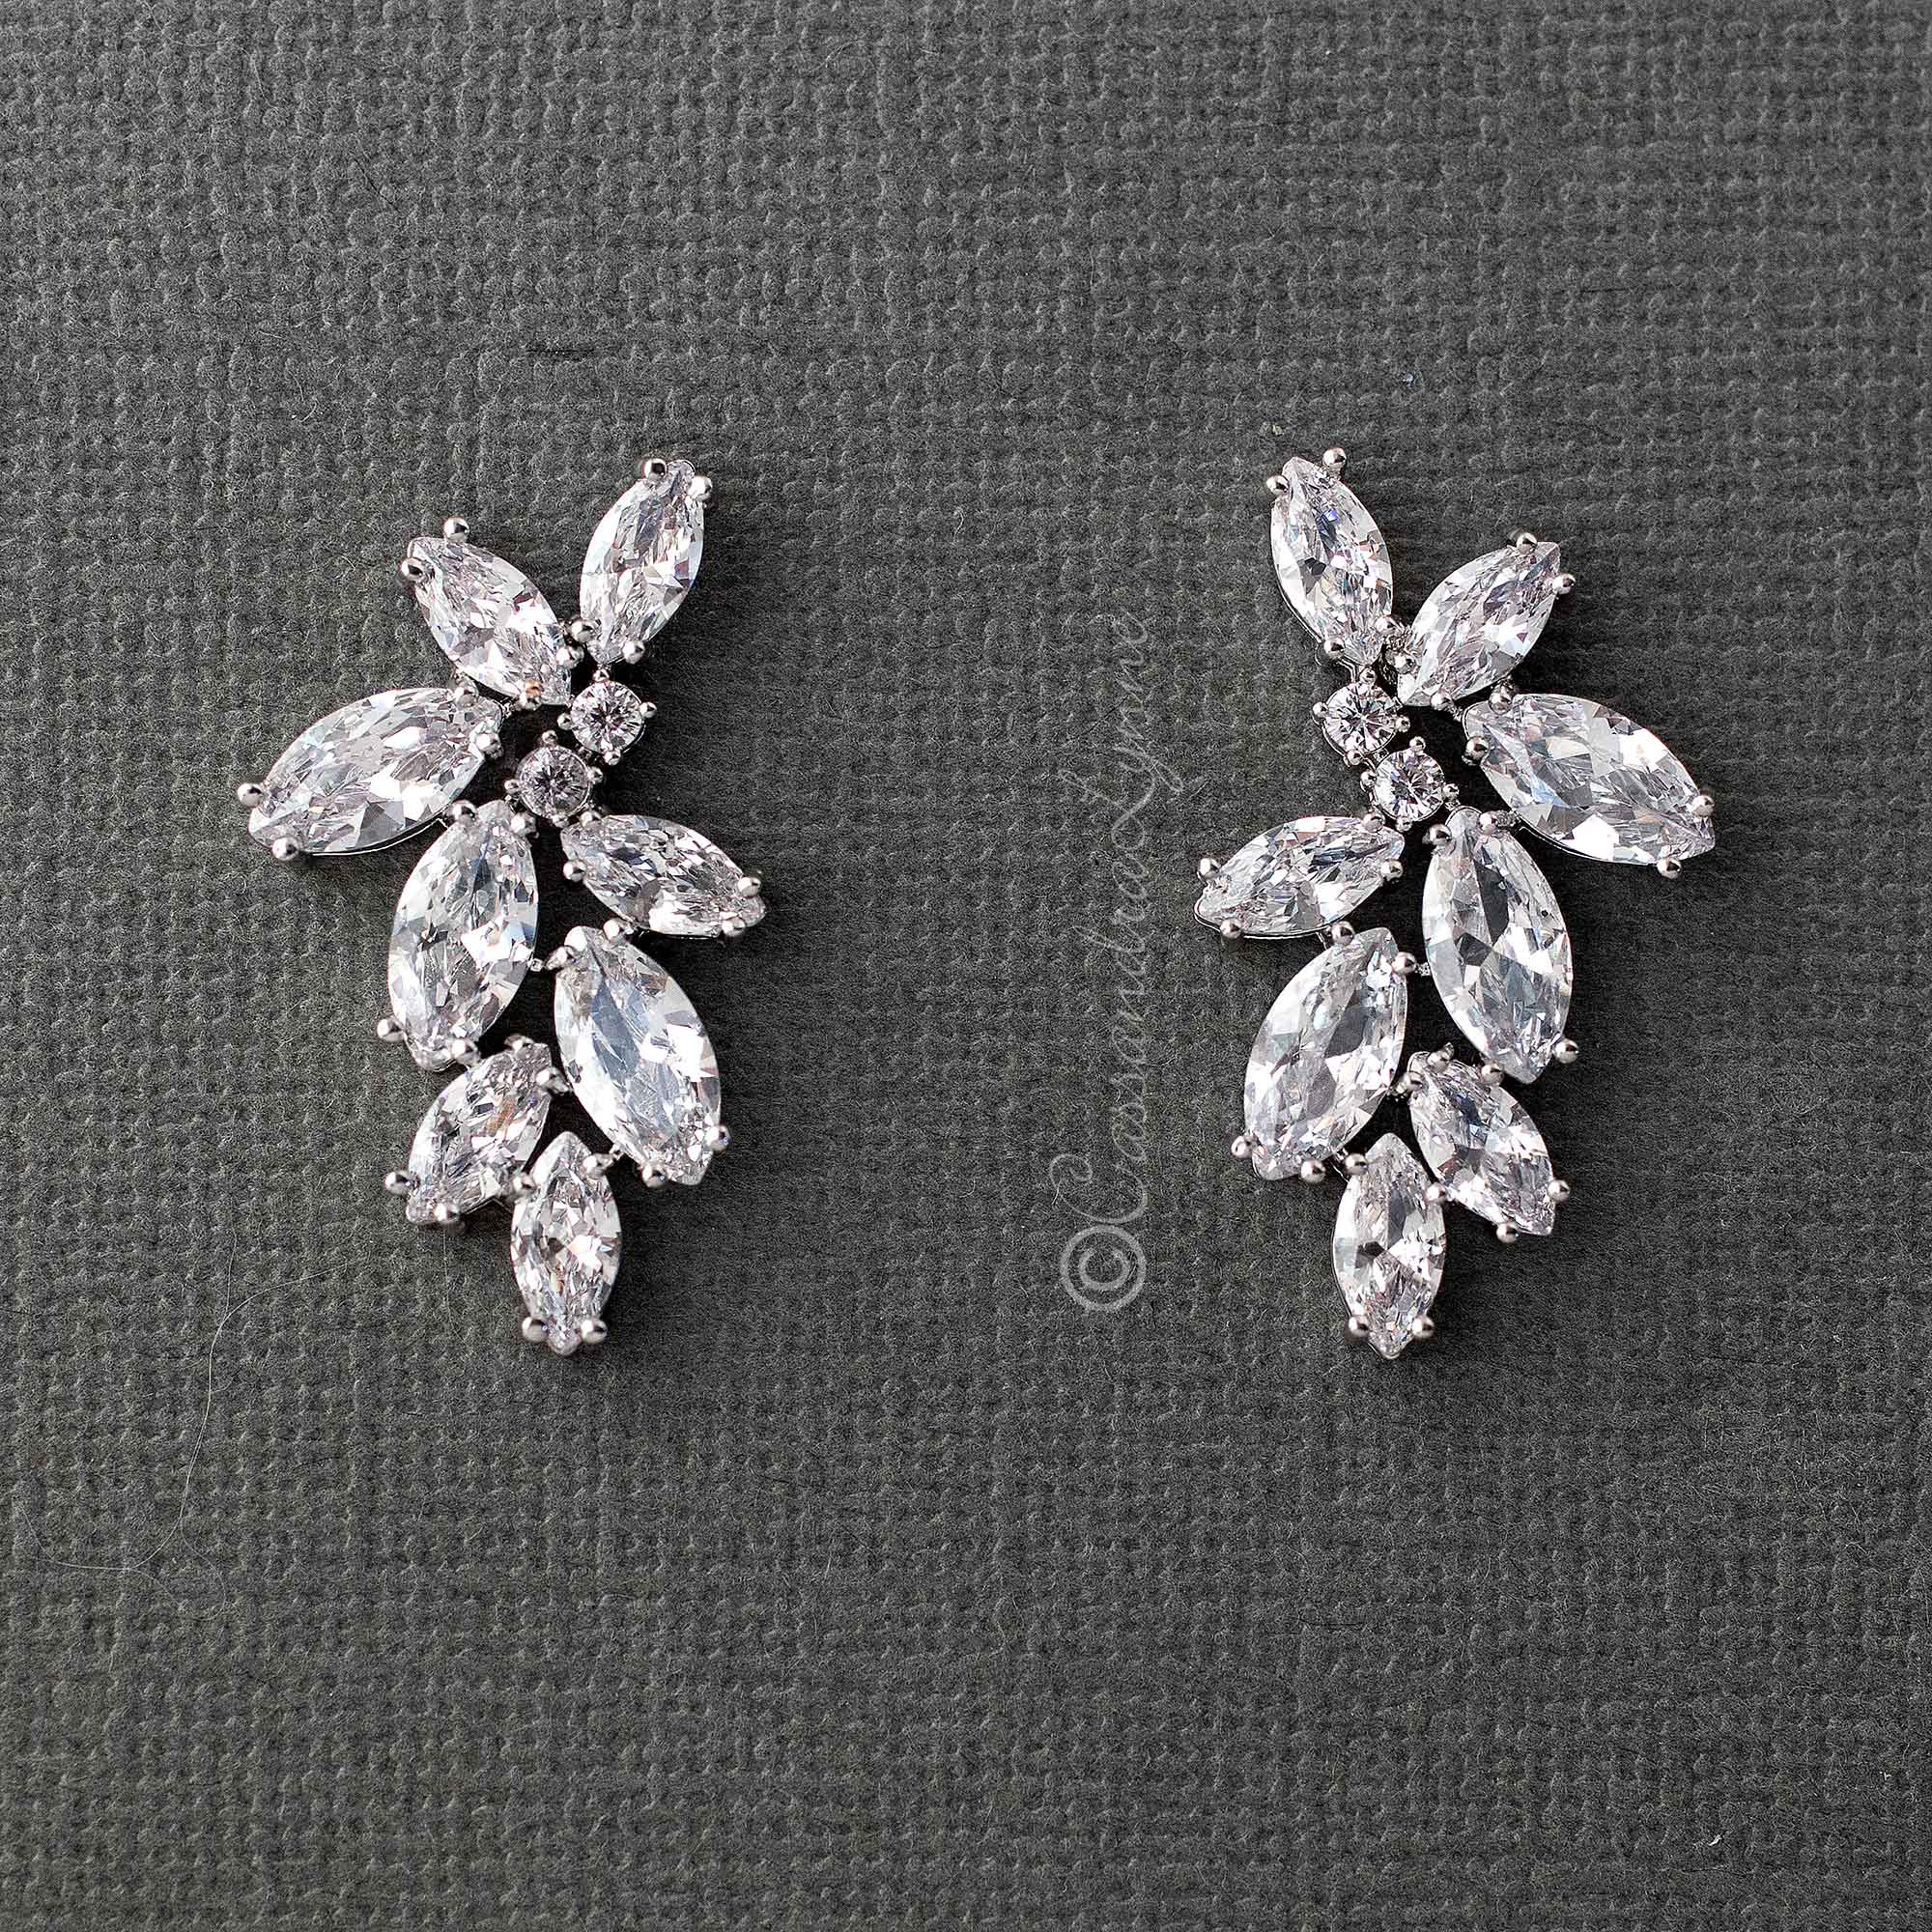 Fashion CZ Marquise Flower Earrings - Cassandra Lynne